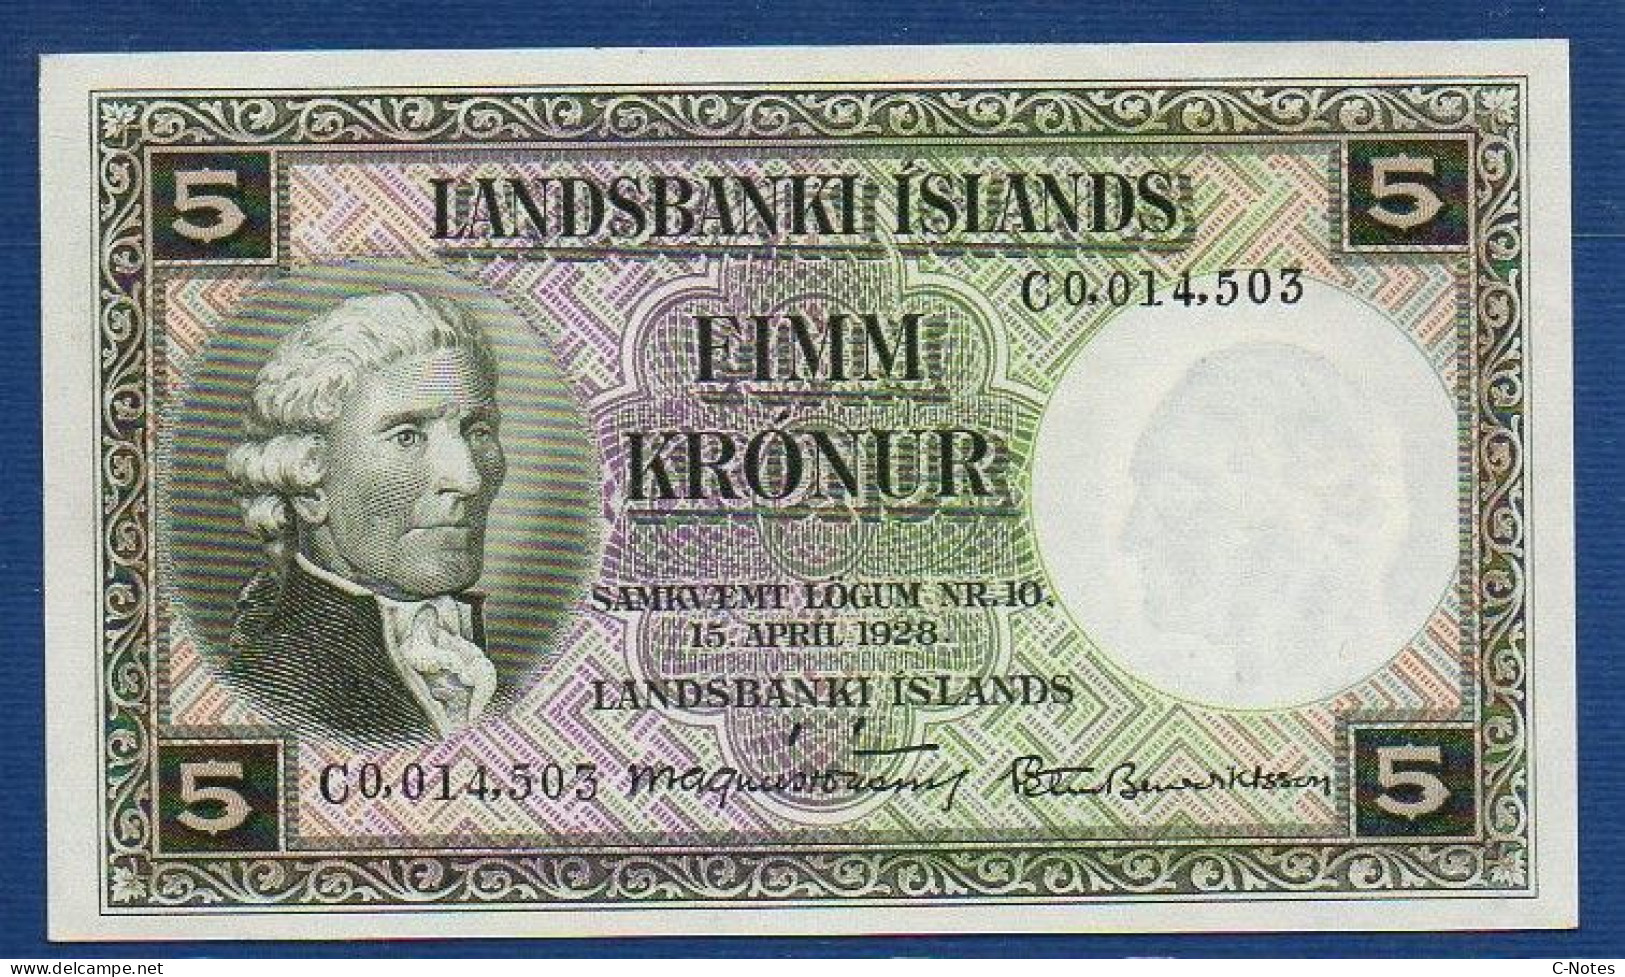 ICELAND - P.32 B6 – 5 Krónur L. 15.04.1928, UNC, S/n C0,014,503 Signatures: Magnús Jónsson & Pétur Benediktsson - Iceland